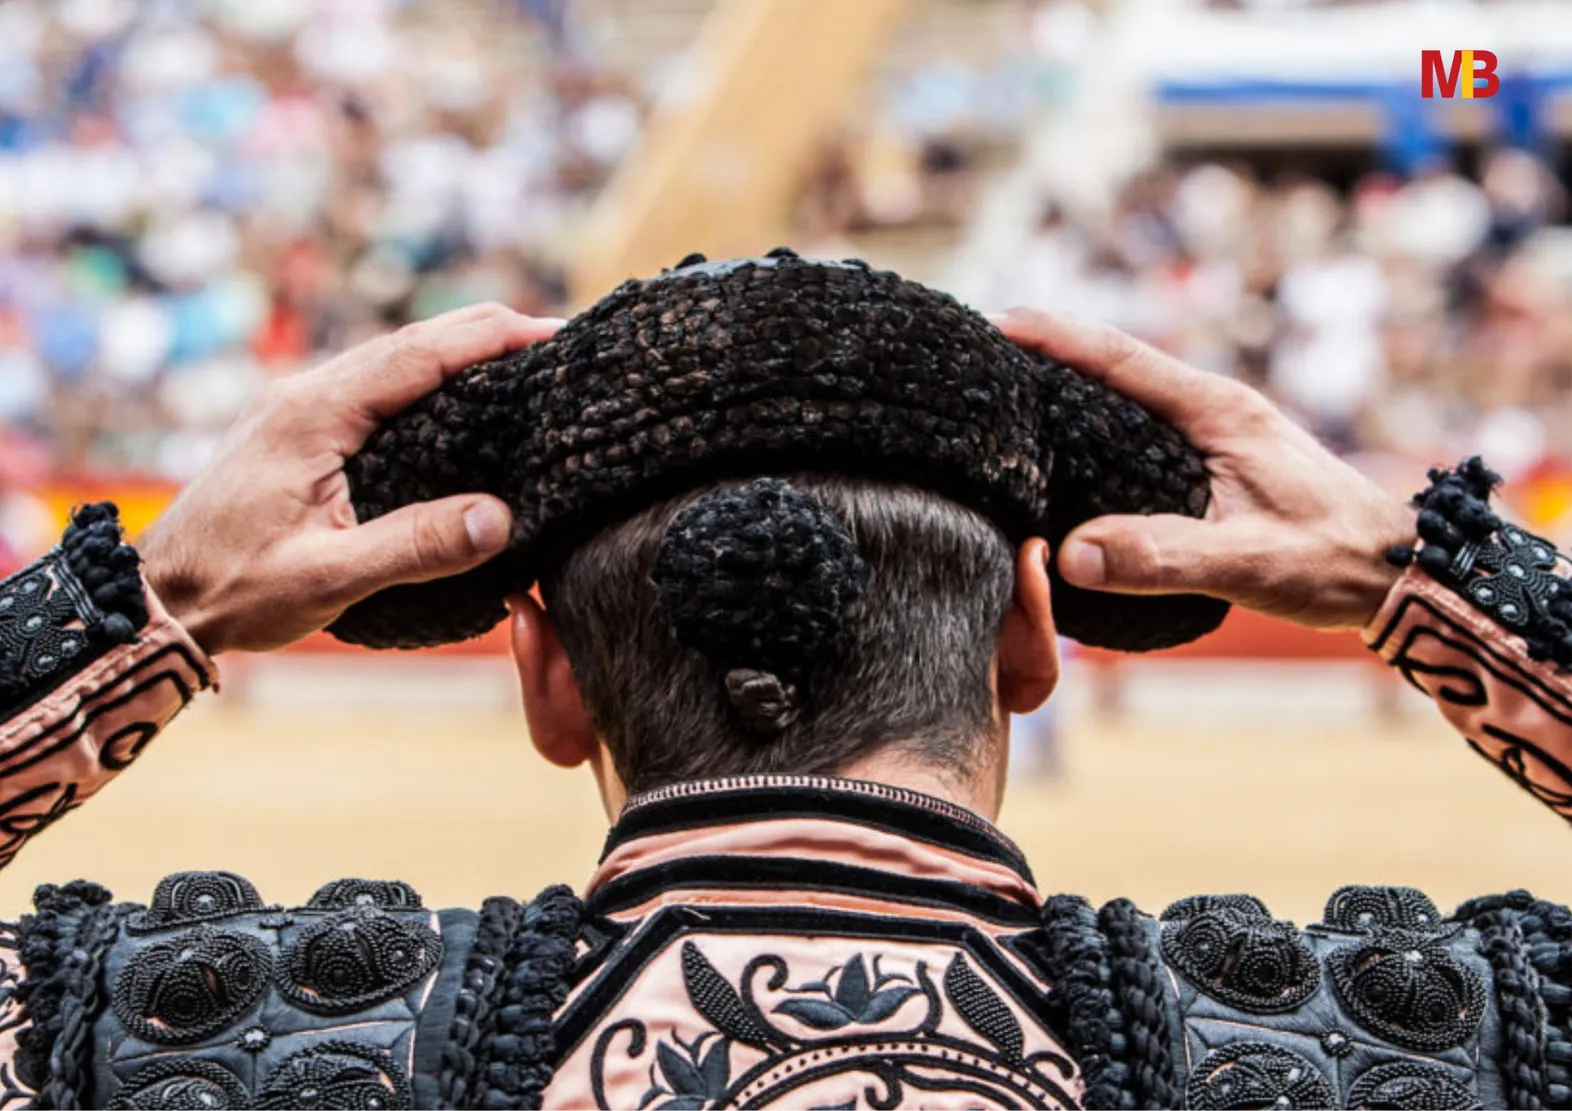 Madrid bullfighting